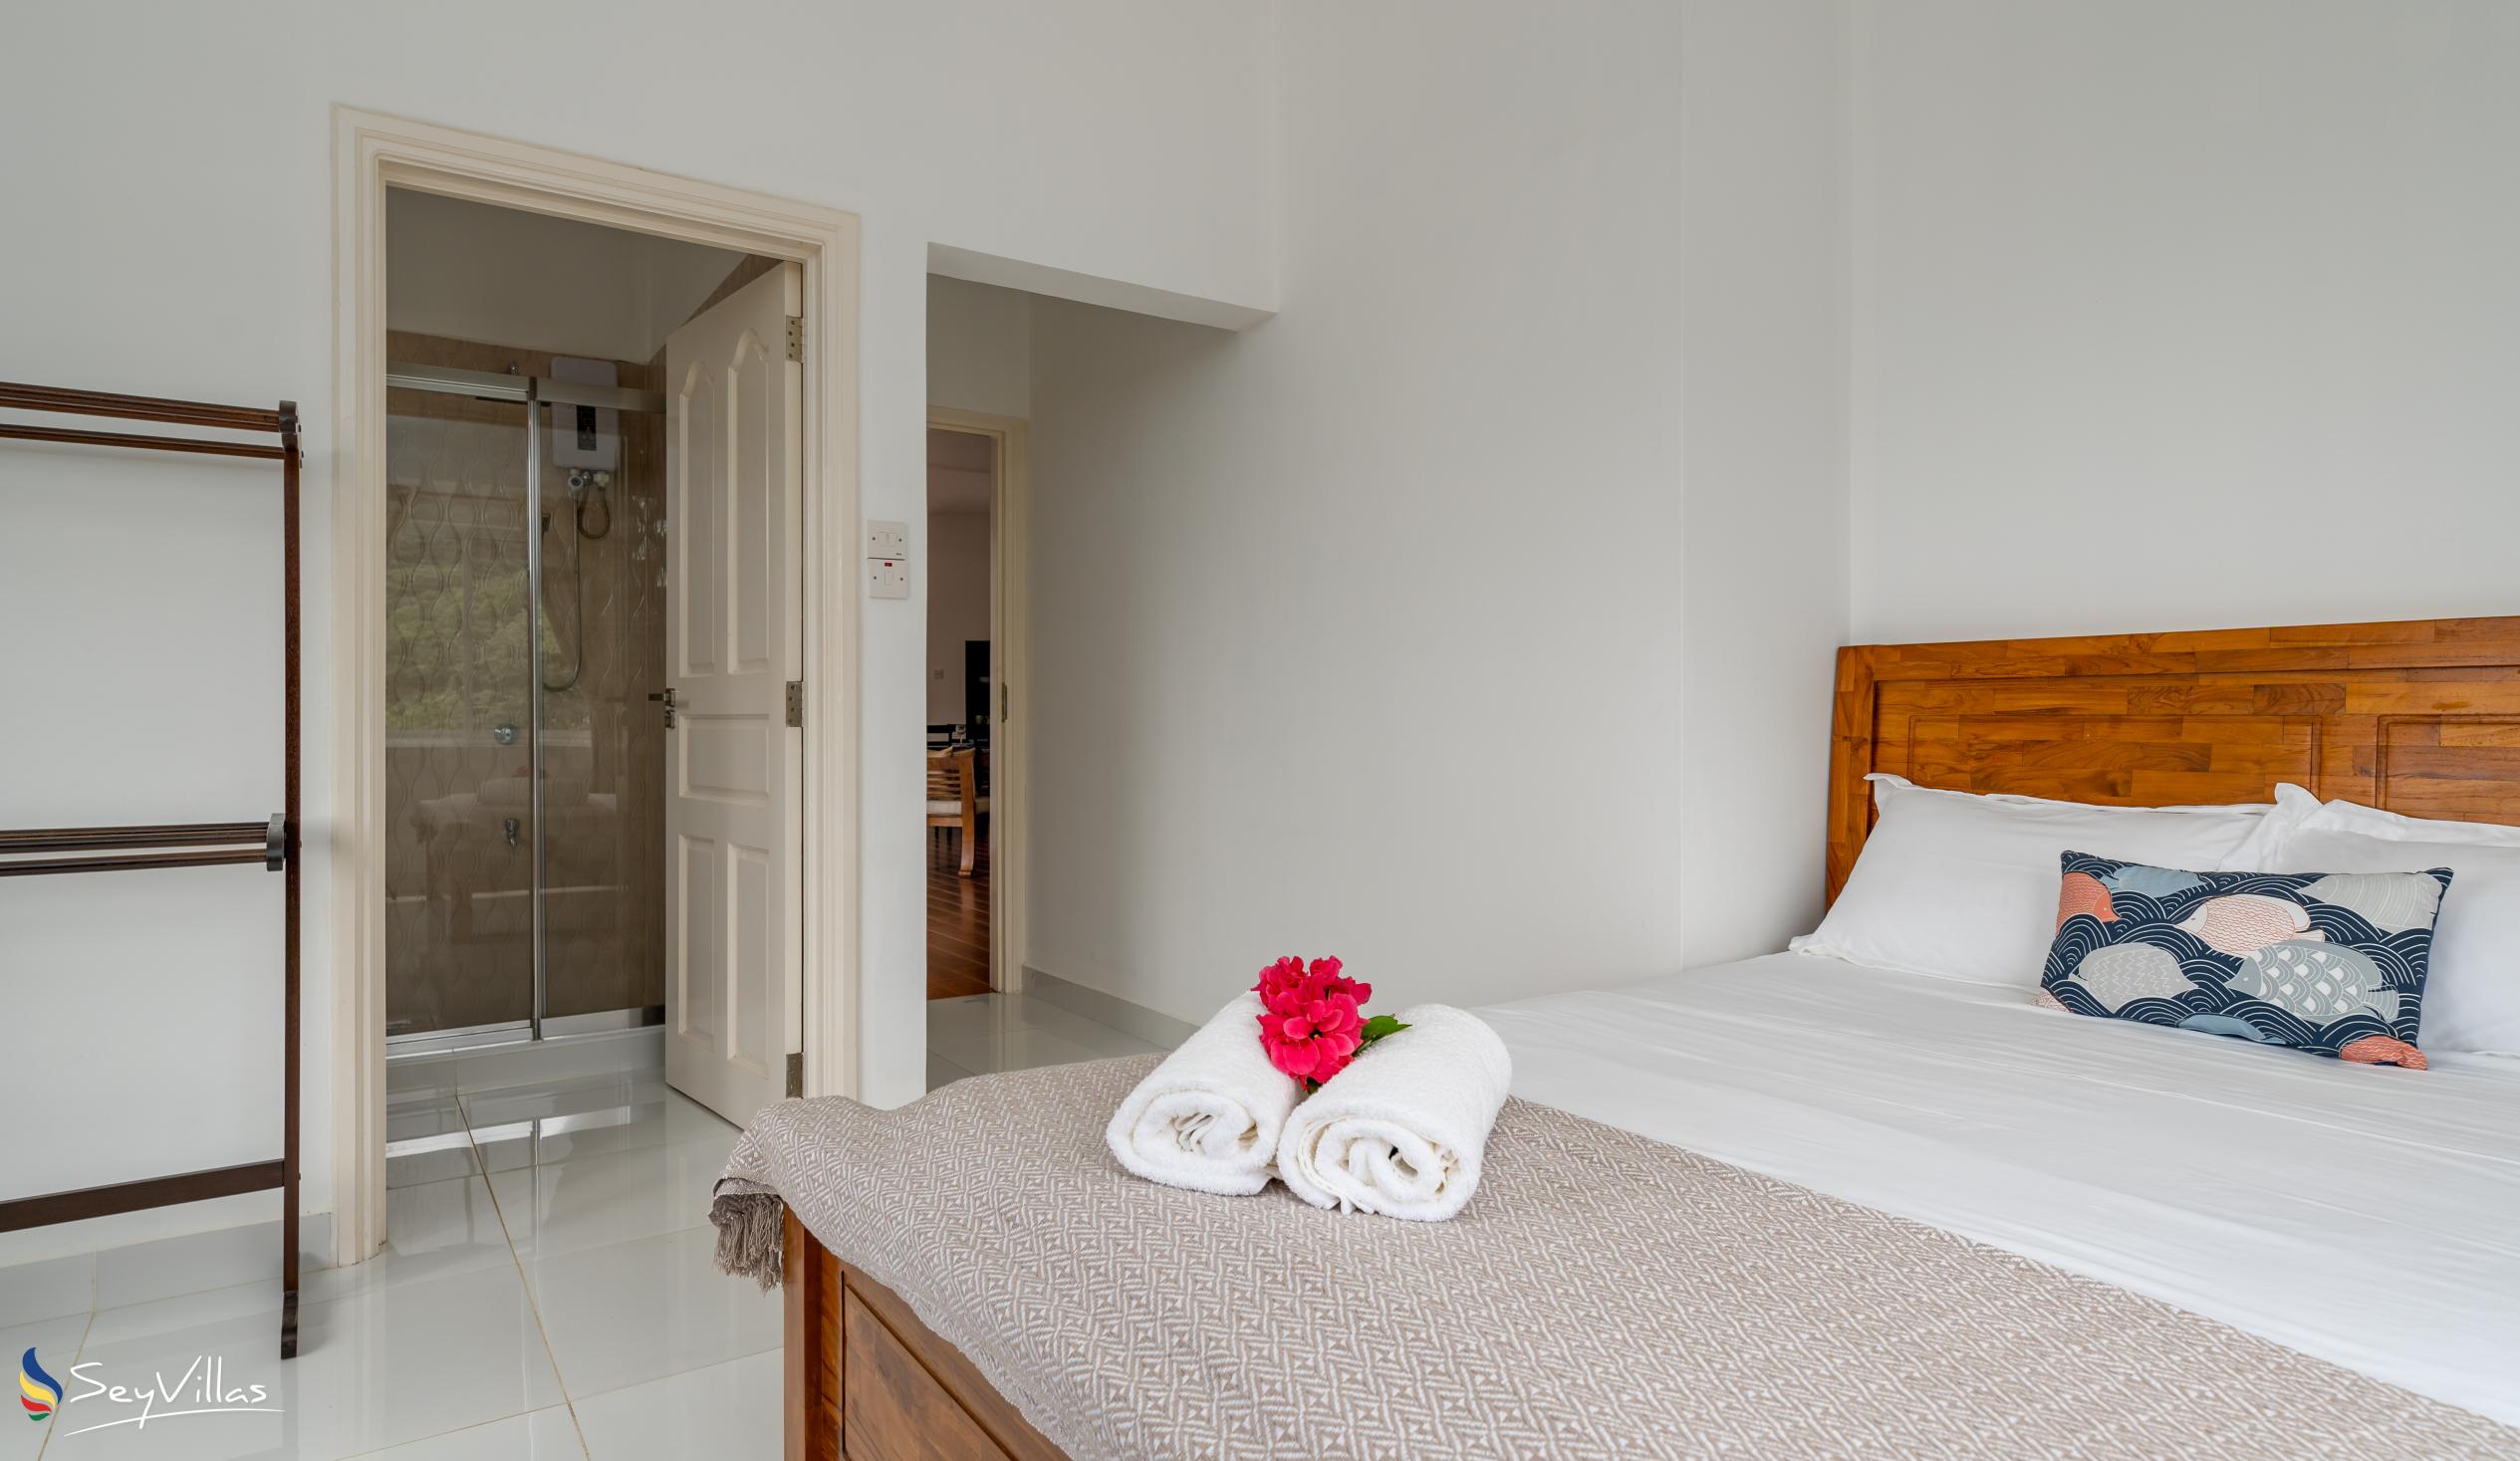 Photo 52: Cella Villa - 2-Bedroom Apartment - Mahé (Seychelles)